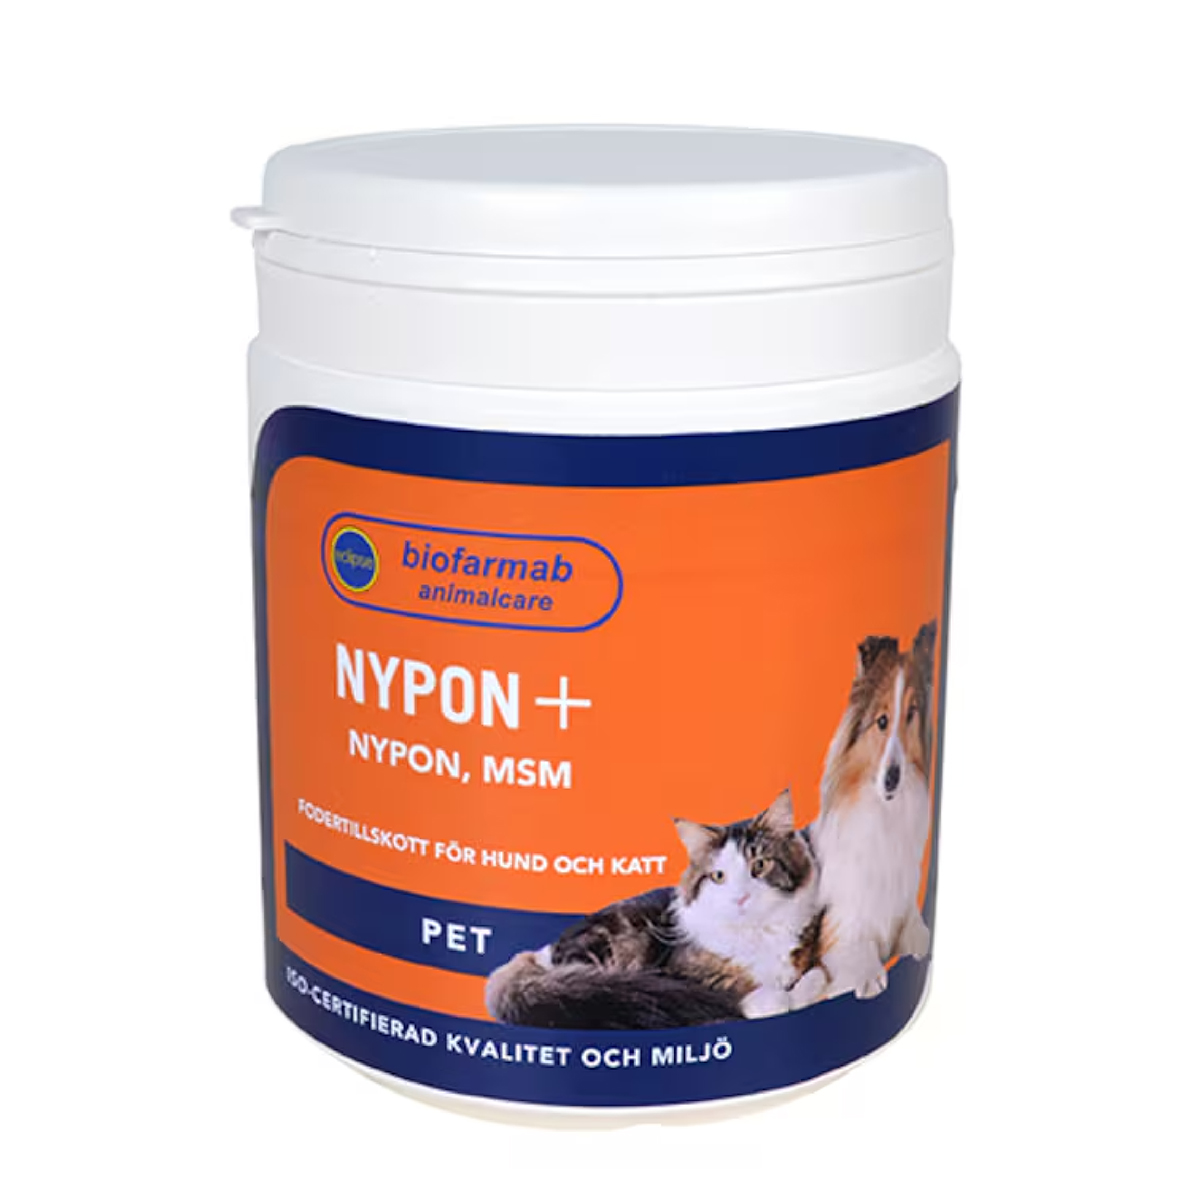 Nypon+ rose hip powder + 350g